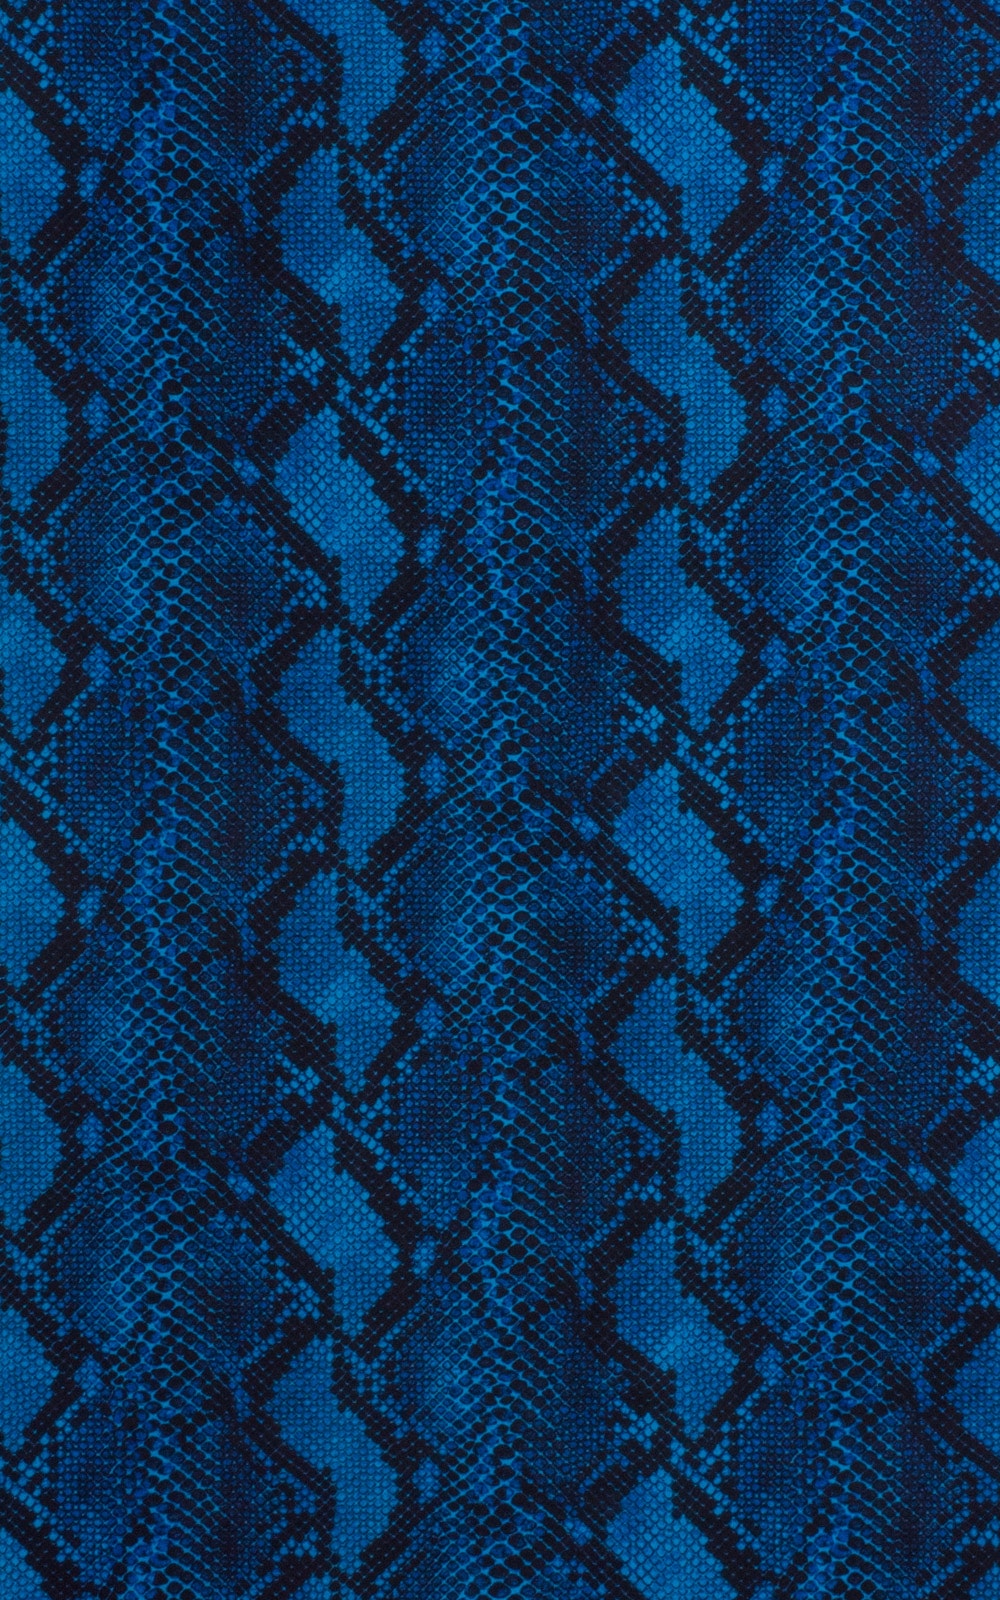 Zipper Front High Cut One Piece Thong in Super ThinSKINZ Blue Serpent Fabric